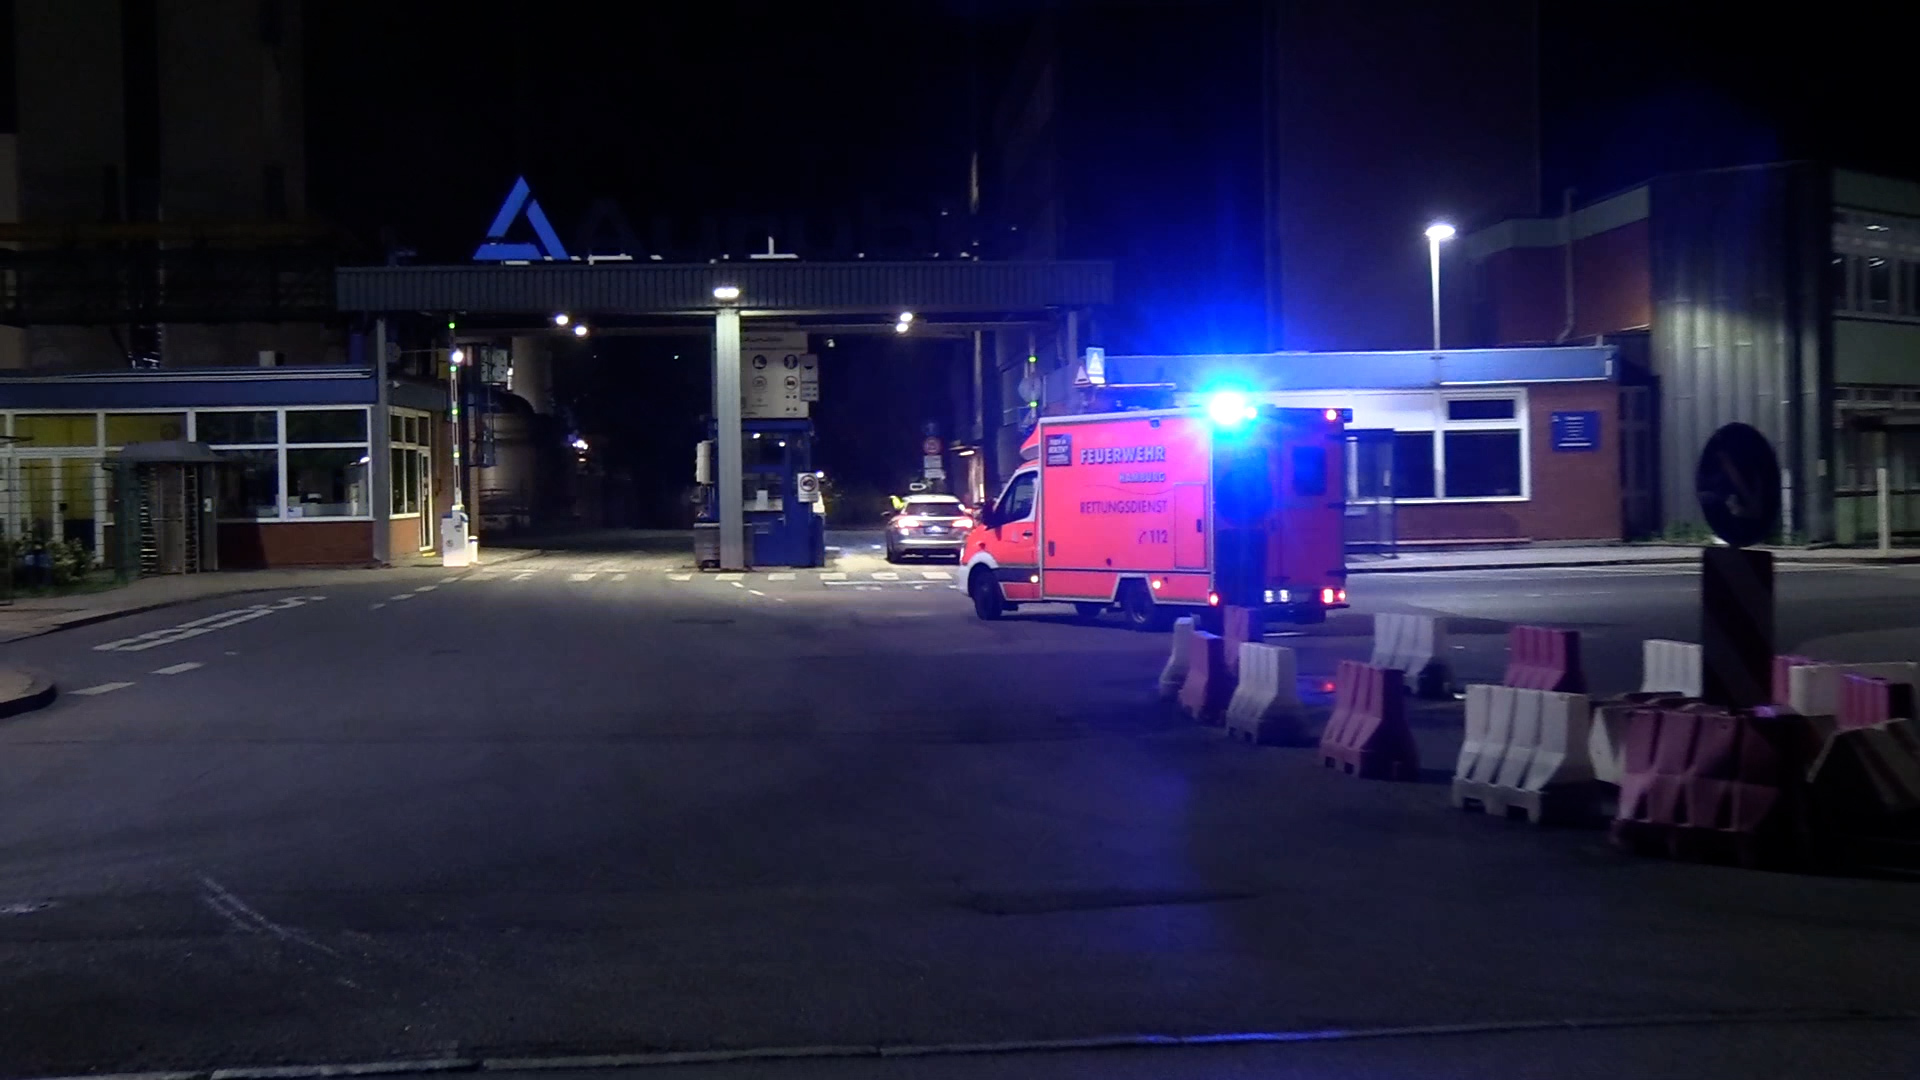 Bei einem Gas-Unfall auf dem Aurubis-Gelände in Hamburg-Veddel sind drei Arbeiter verstorben.